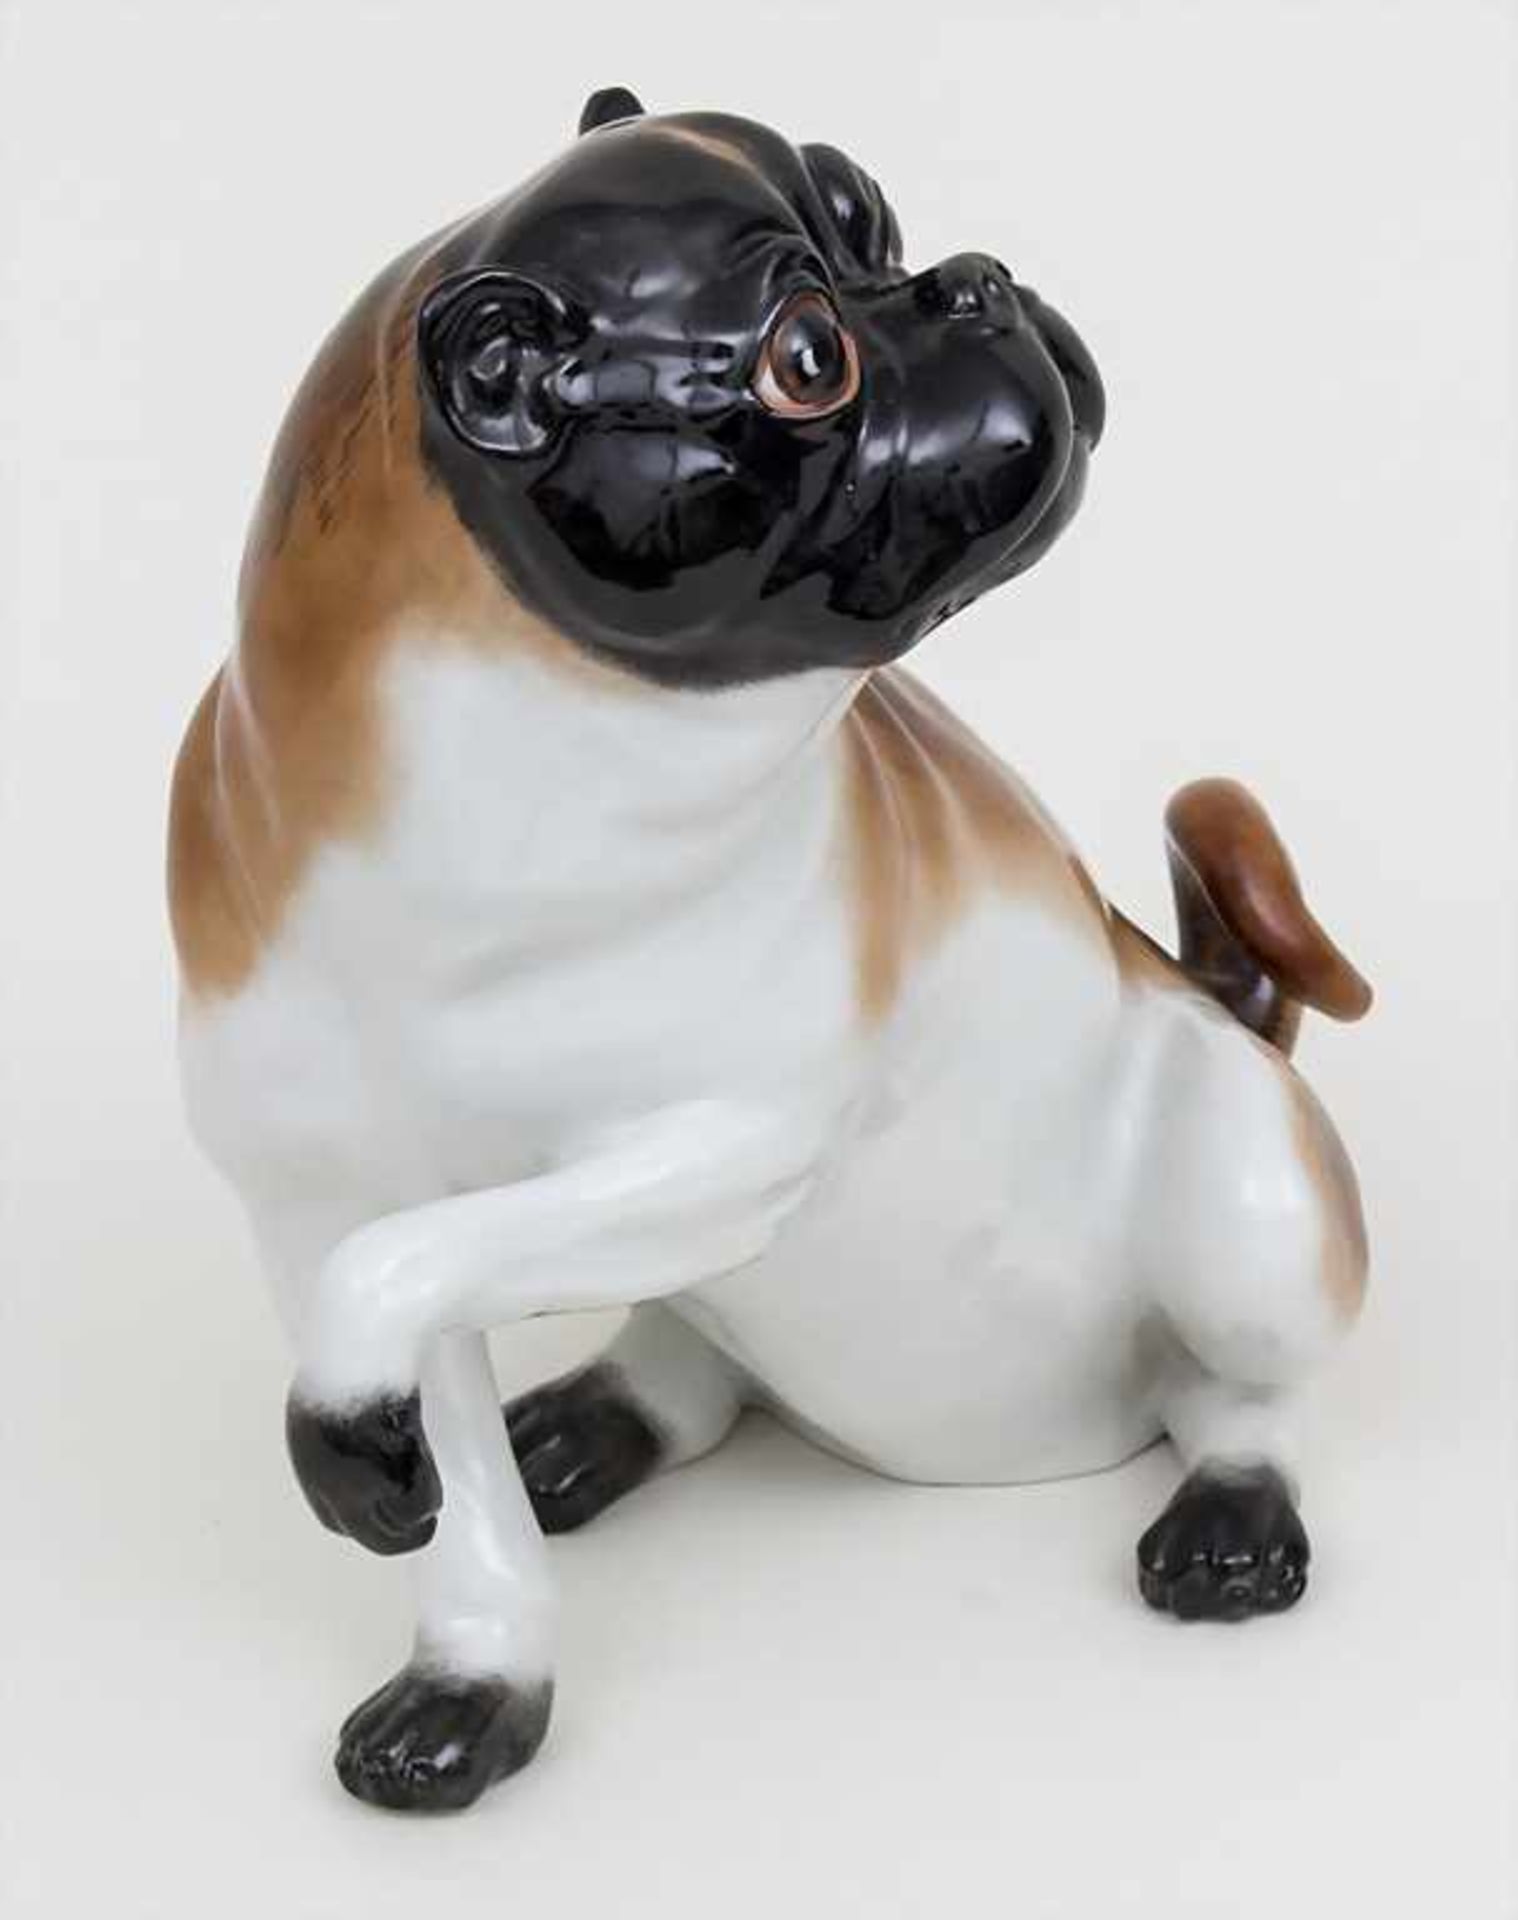 Sitzender Mops / A sitting pug dog, wohl Carl Thieme, Potschappel, 20. Jh. Material: Porzellan, - Bild 2 aus 4